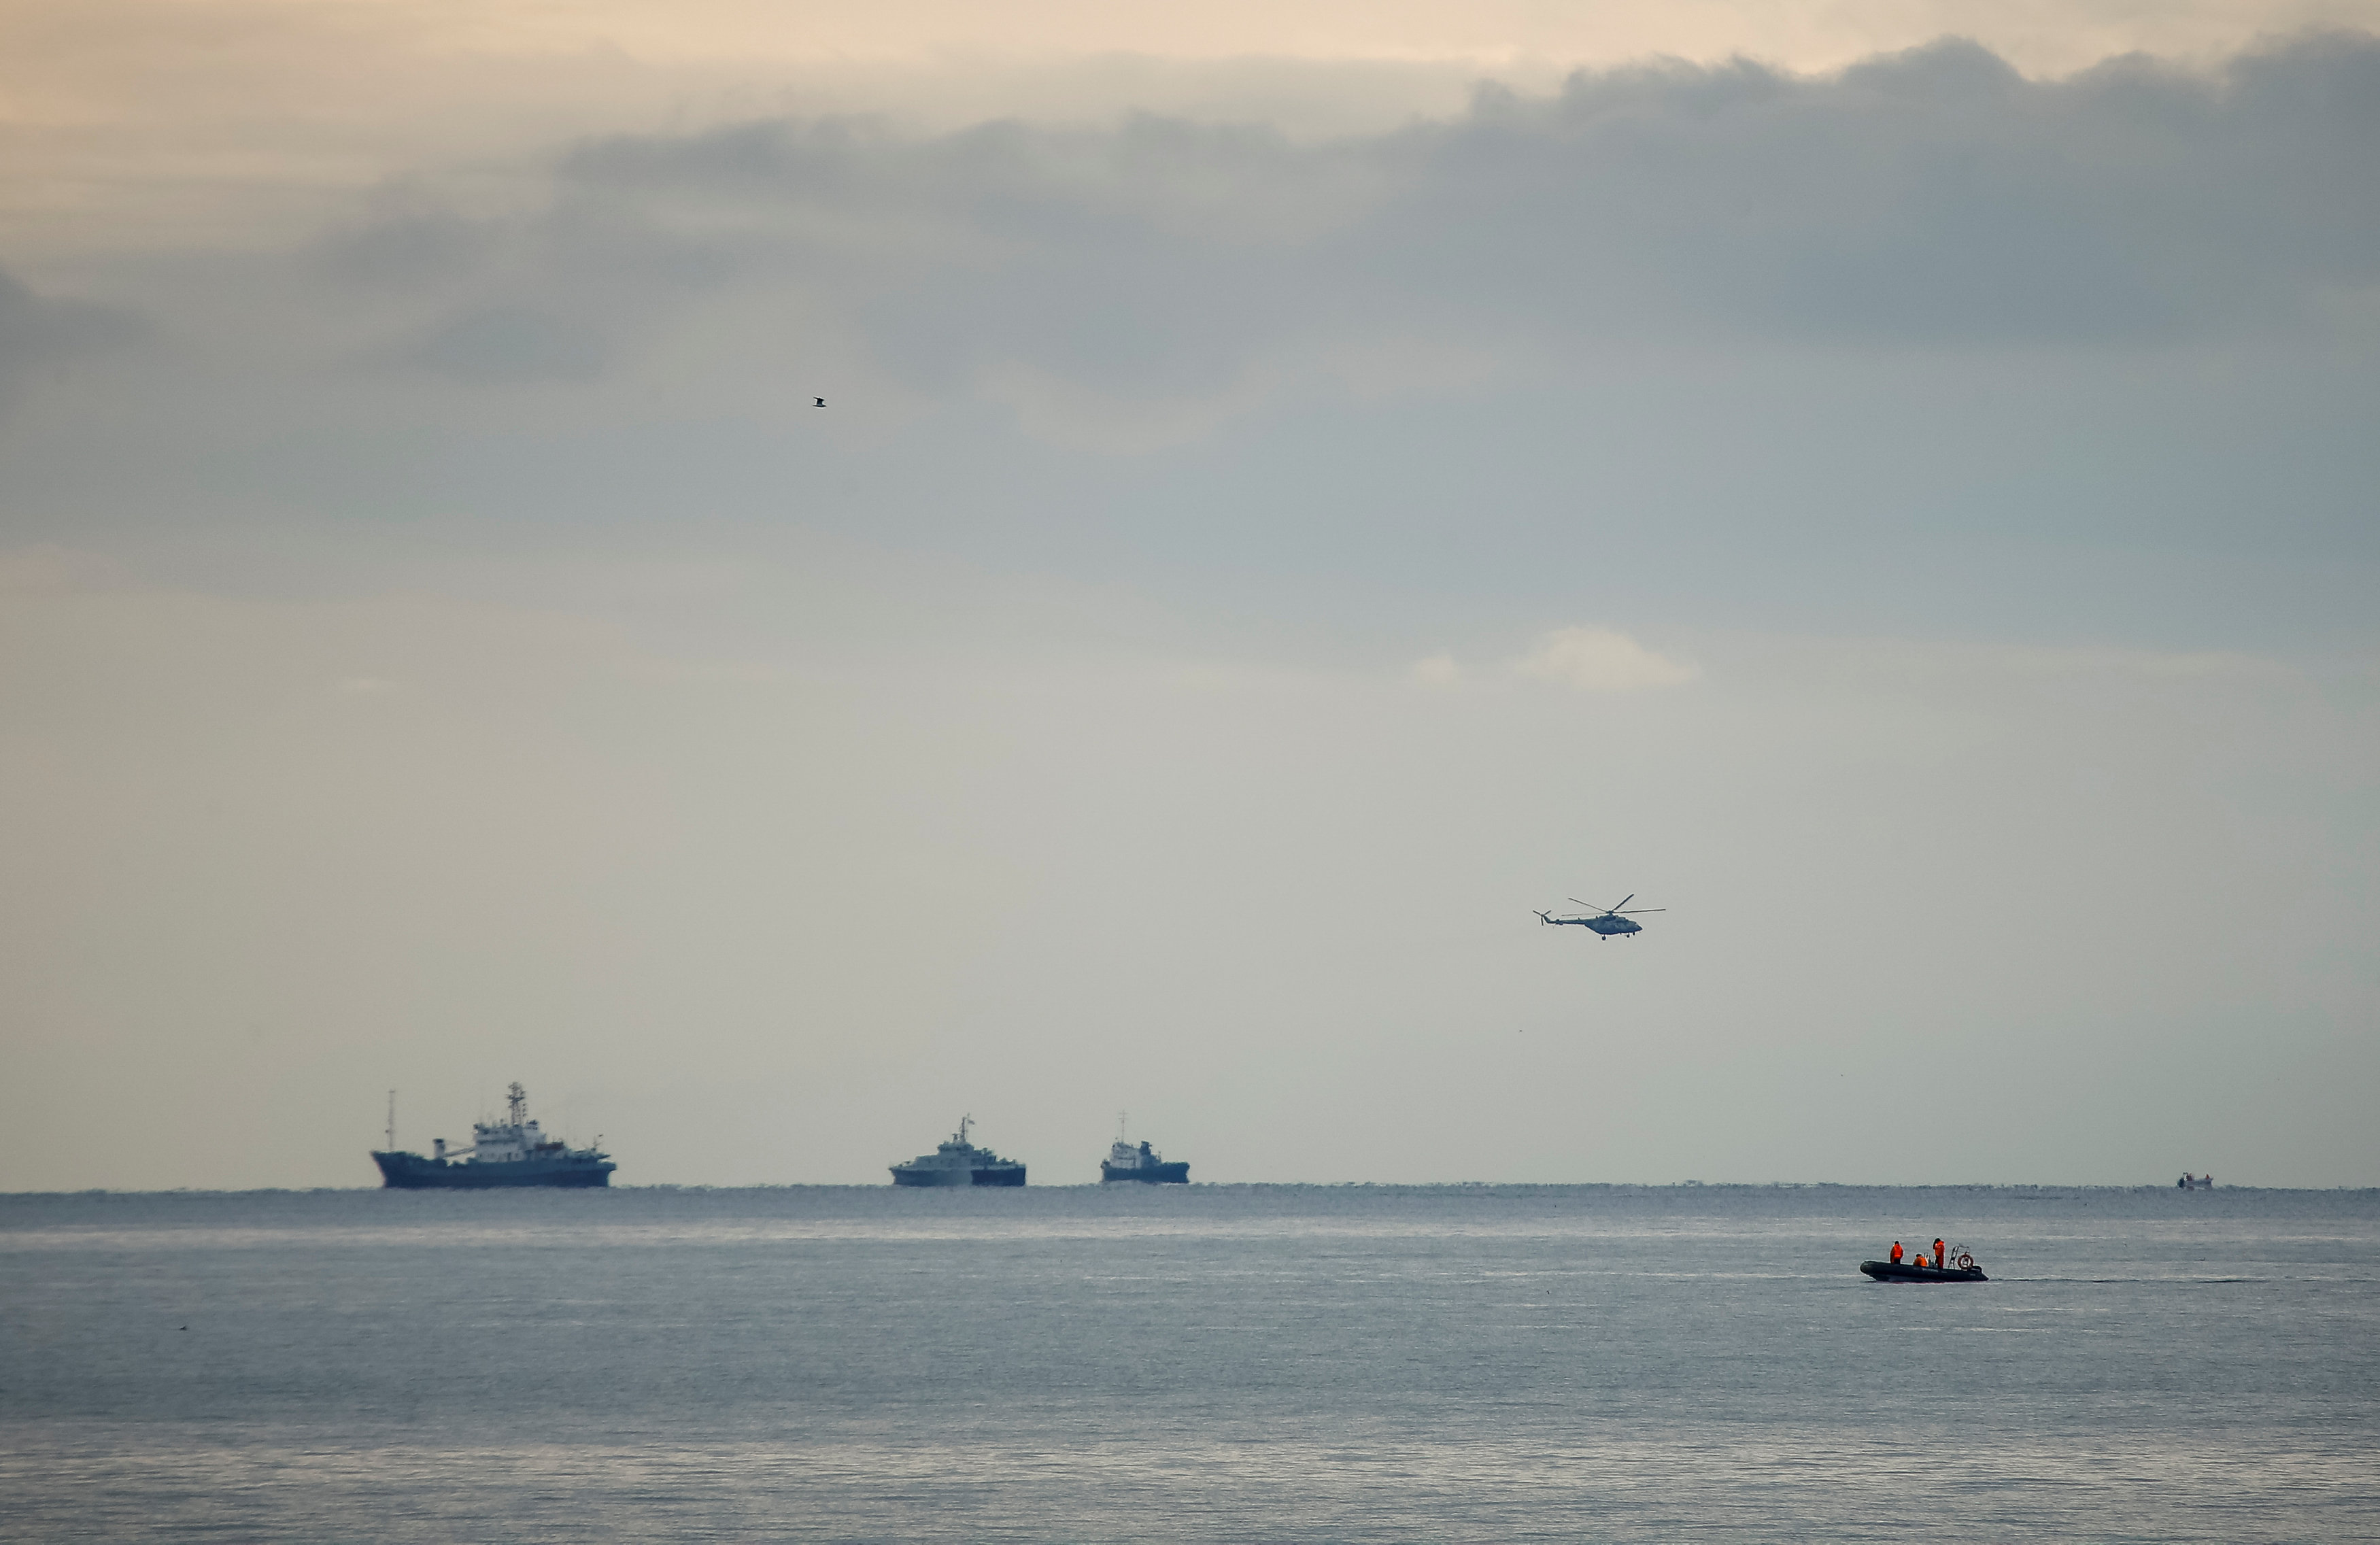 طائرات الهليكوبتر تحلق فوق سفن البحر الاسود بالقرب من موقع الطائرة المحطمة